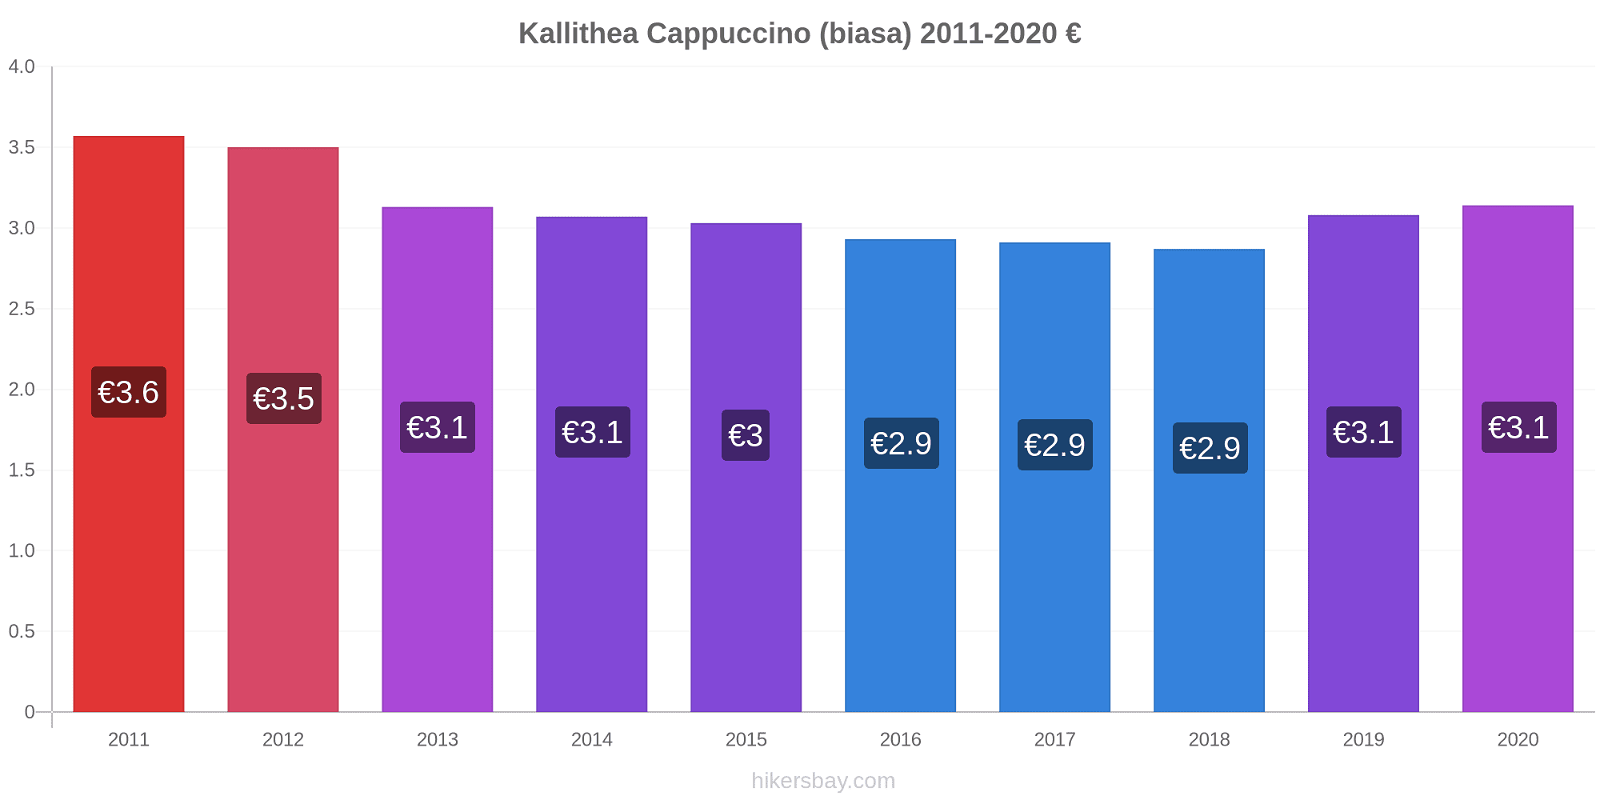 Kallithea perubahan harga Cappuccino (biasa) hikersbay.com